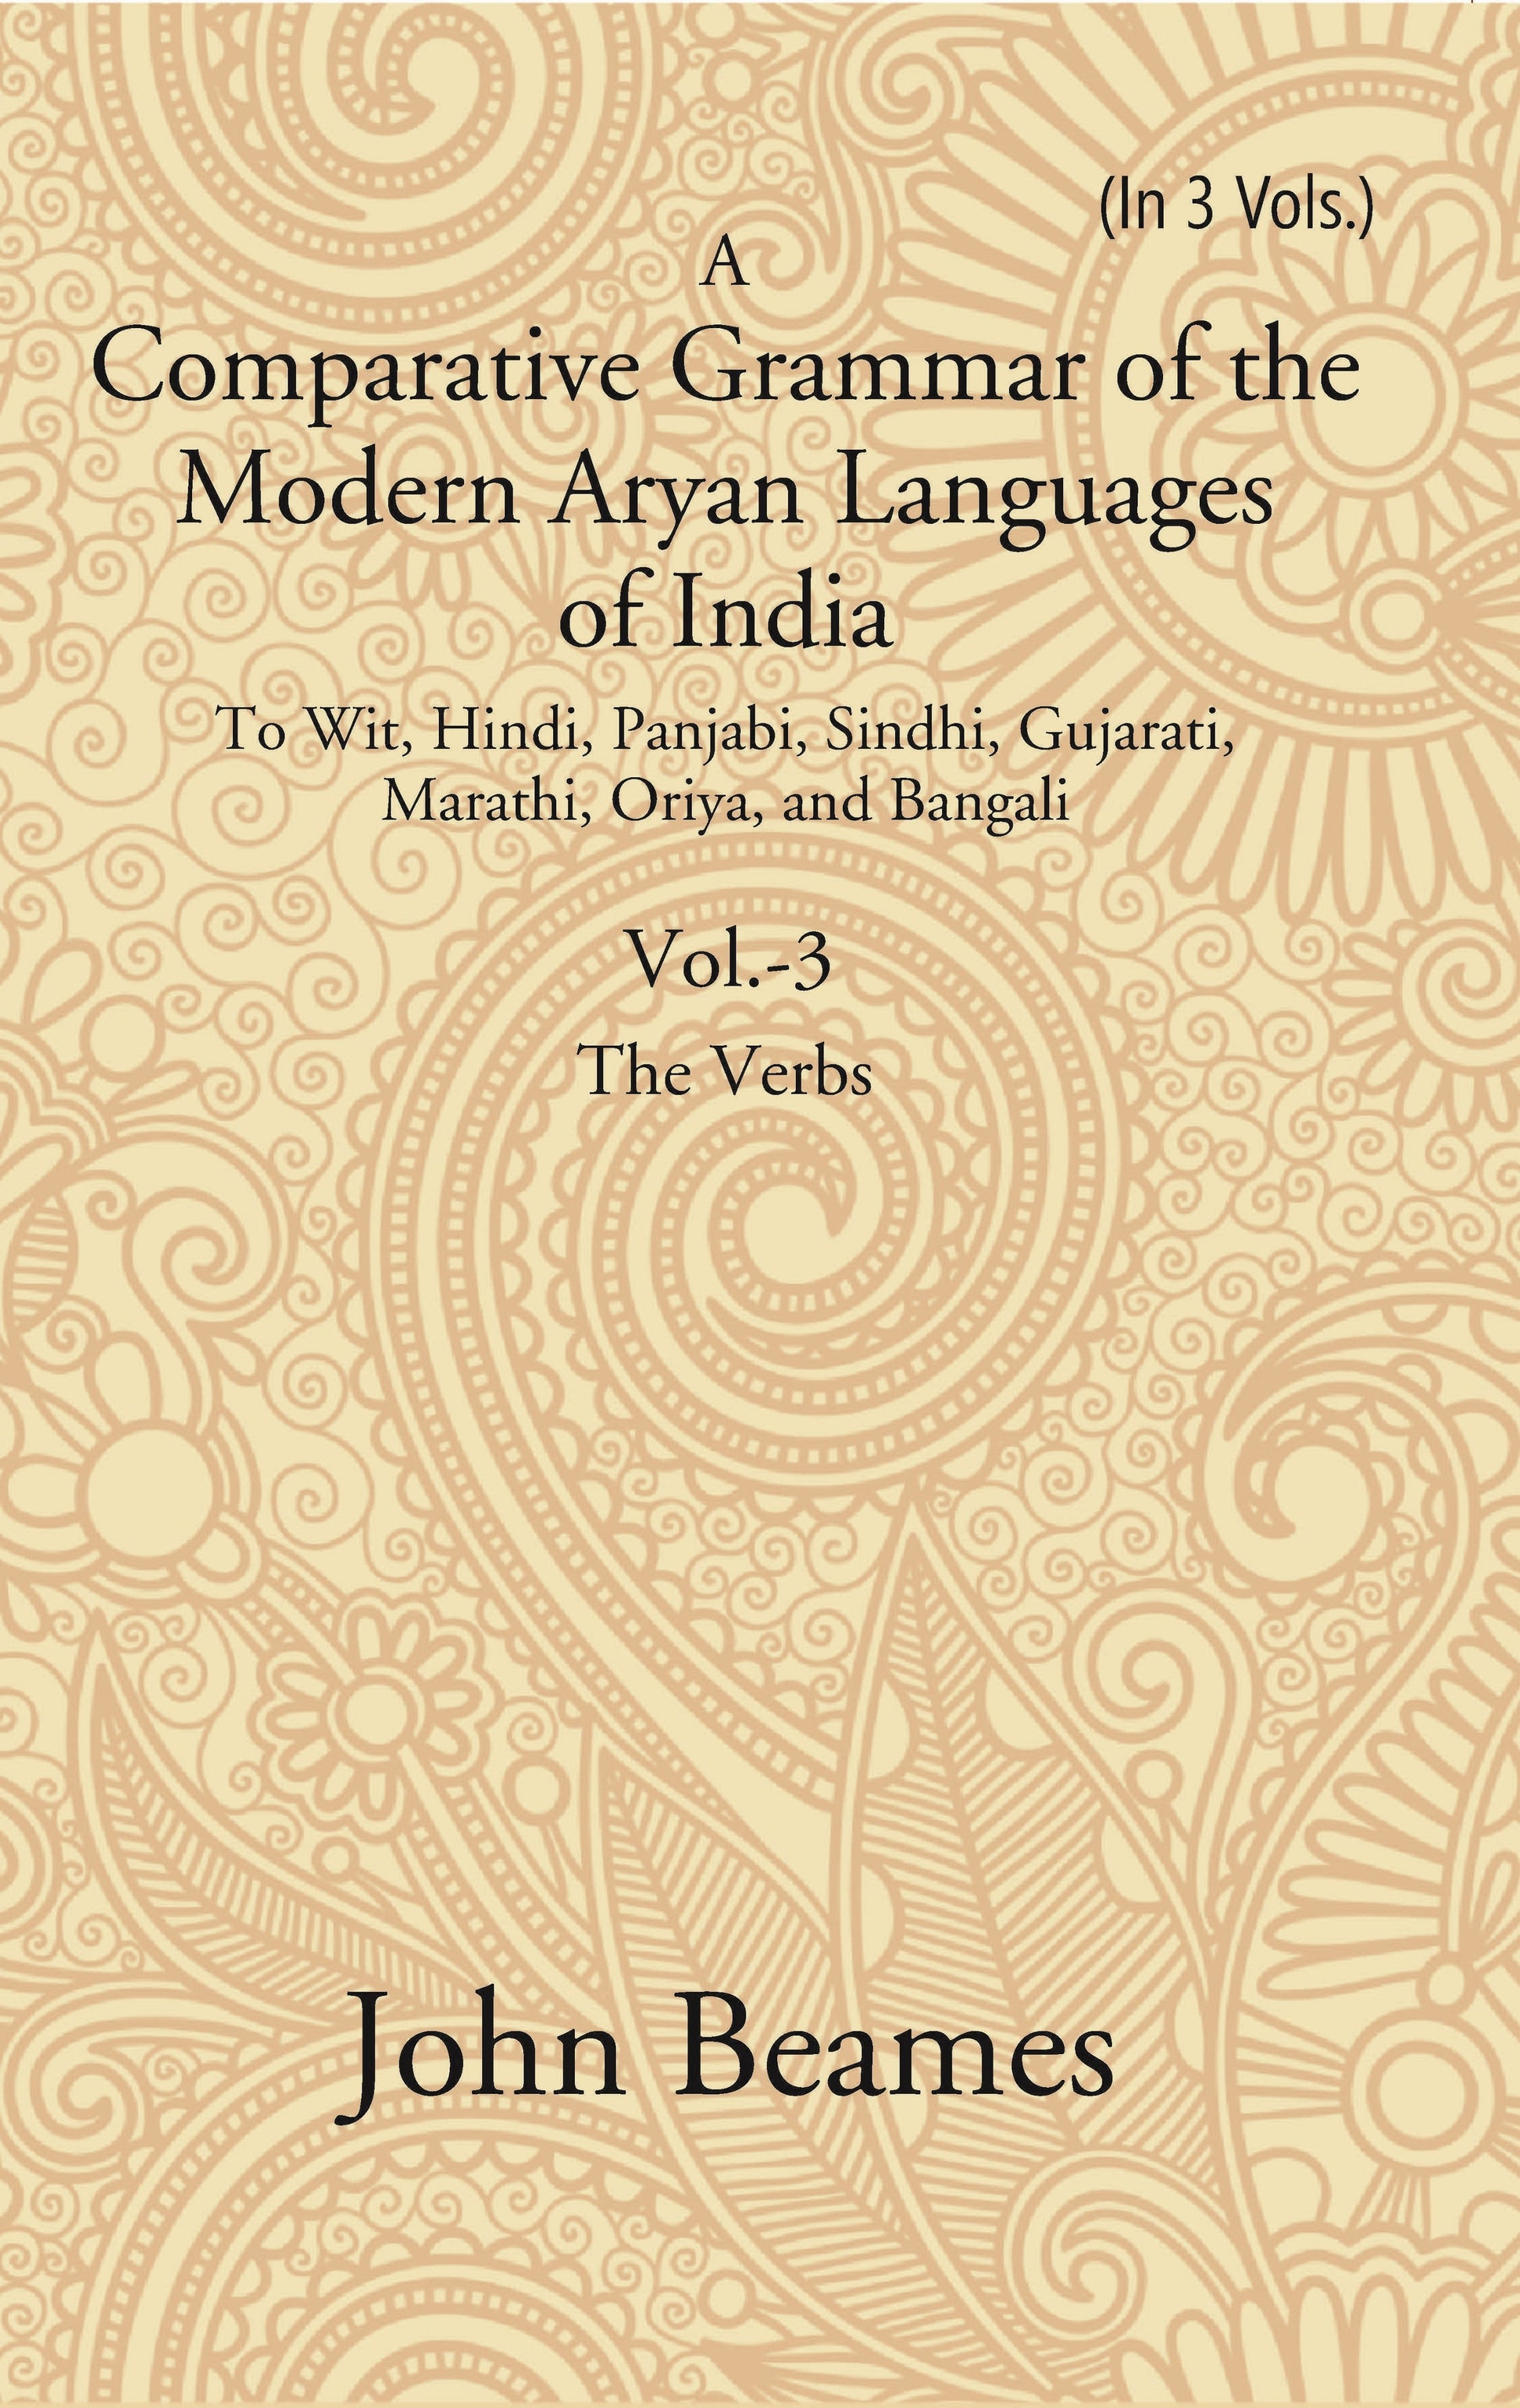 A Comparative Grammar of the Modern Aryan Languages of India: To Wit, Hindi, Panjabi, Sindhi, Gujarati, Marathi, Oriya, and Bangali (The Verb) Volume 3rd